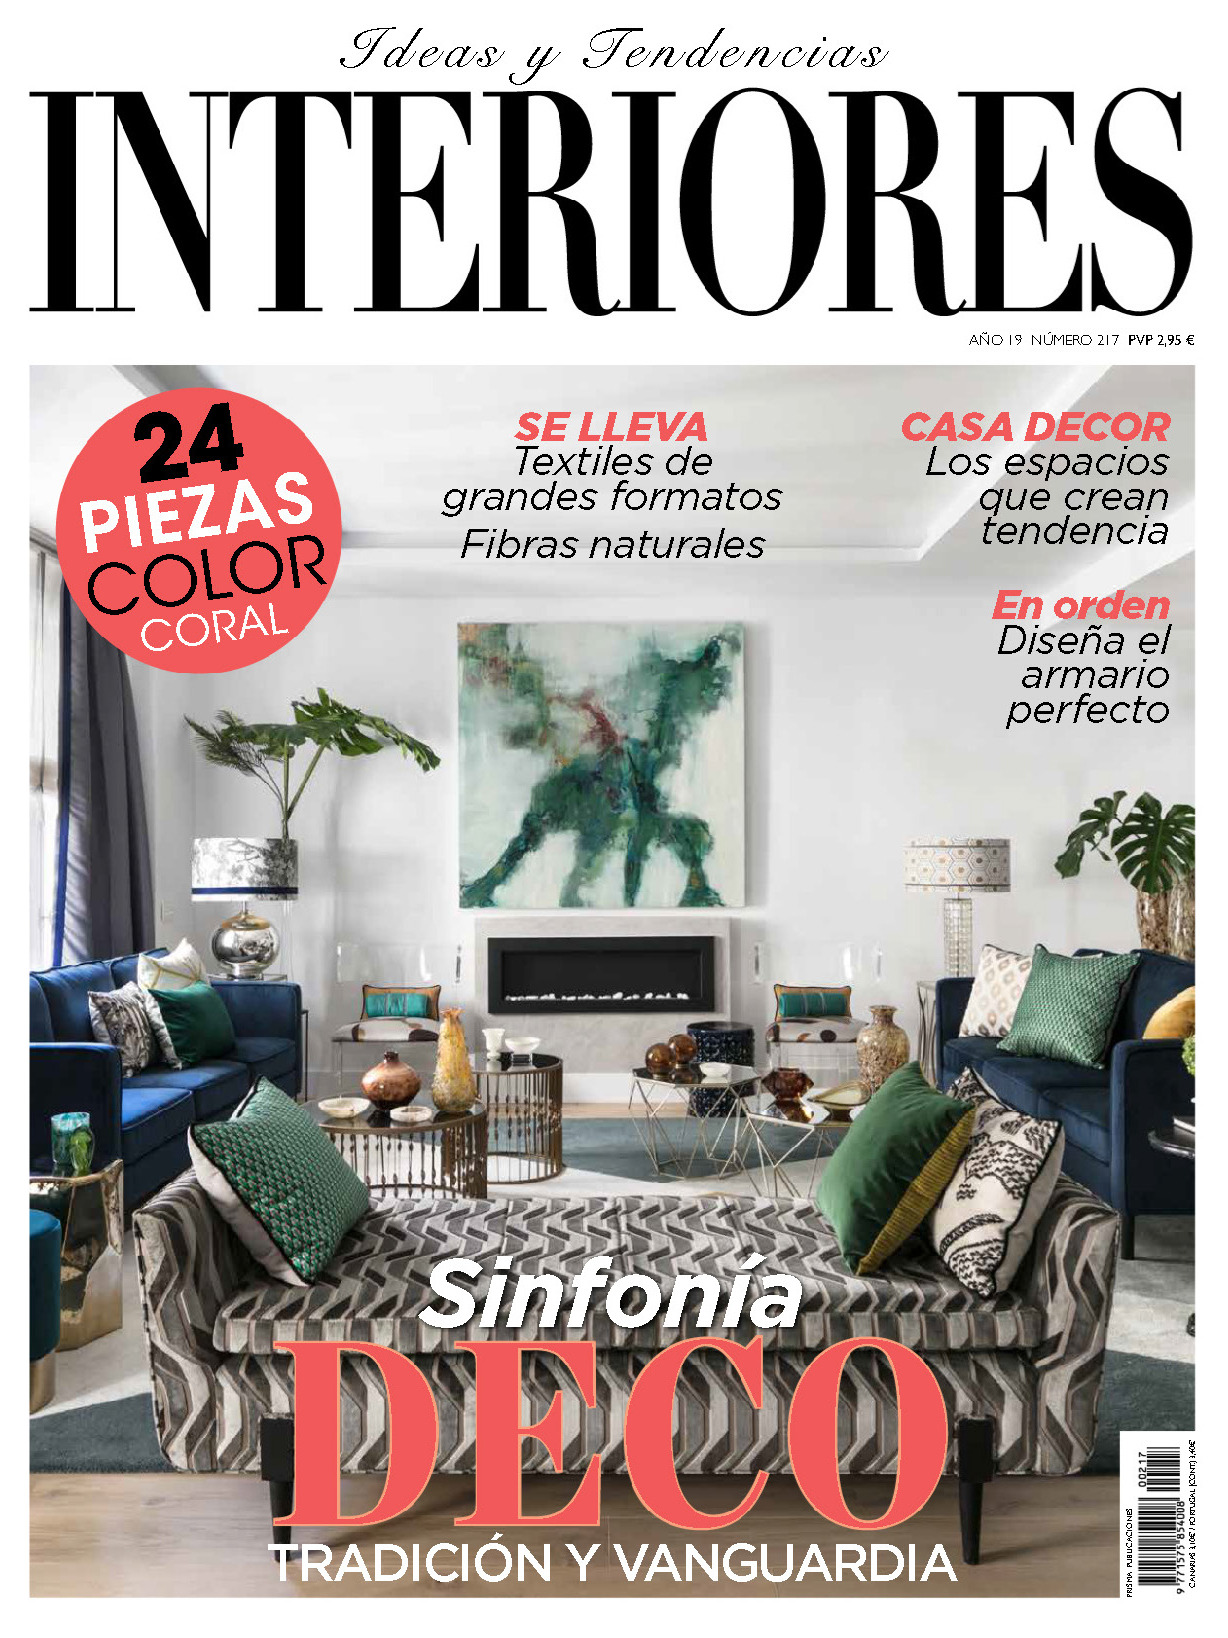 《Interiores》西班牙室内时尚杂志2019年02月号